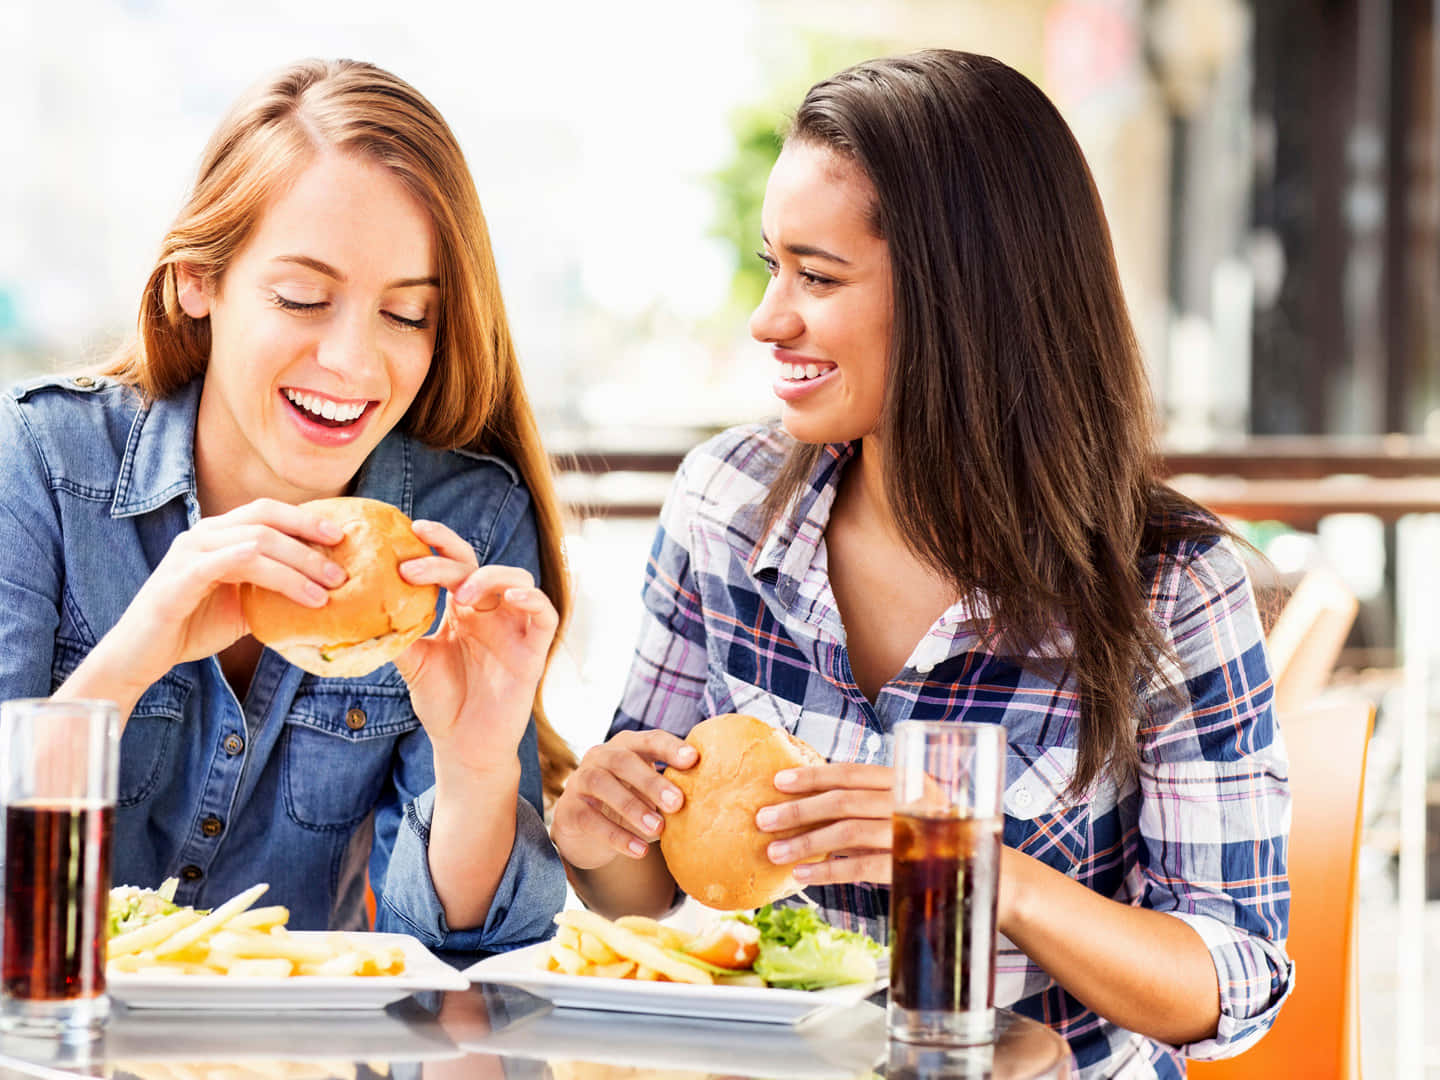 Tvåkvinnor Äter Hamburgare Och Pommes Frites På En Restaurang